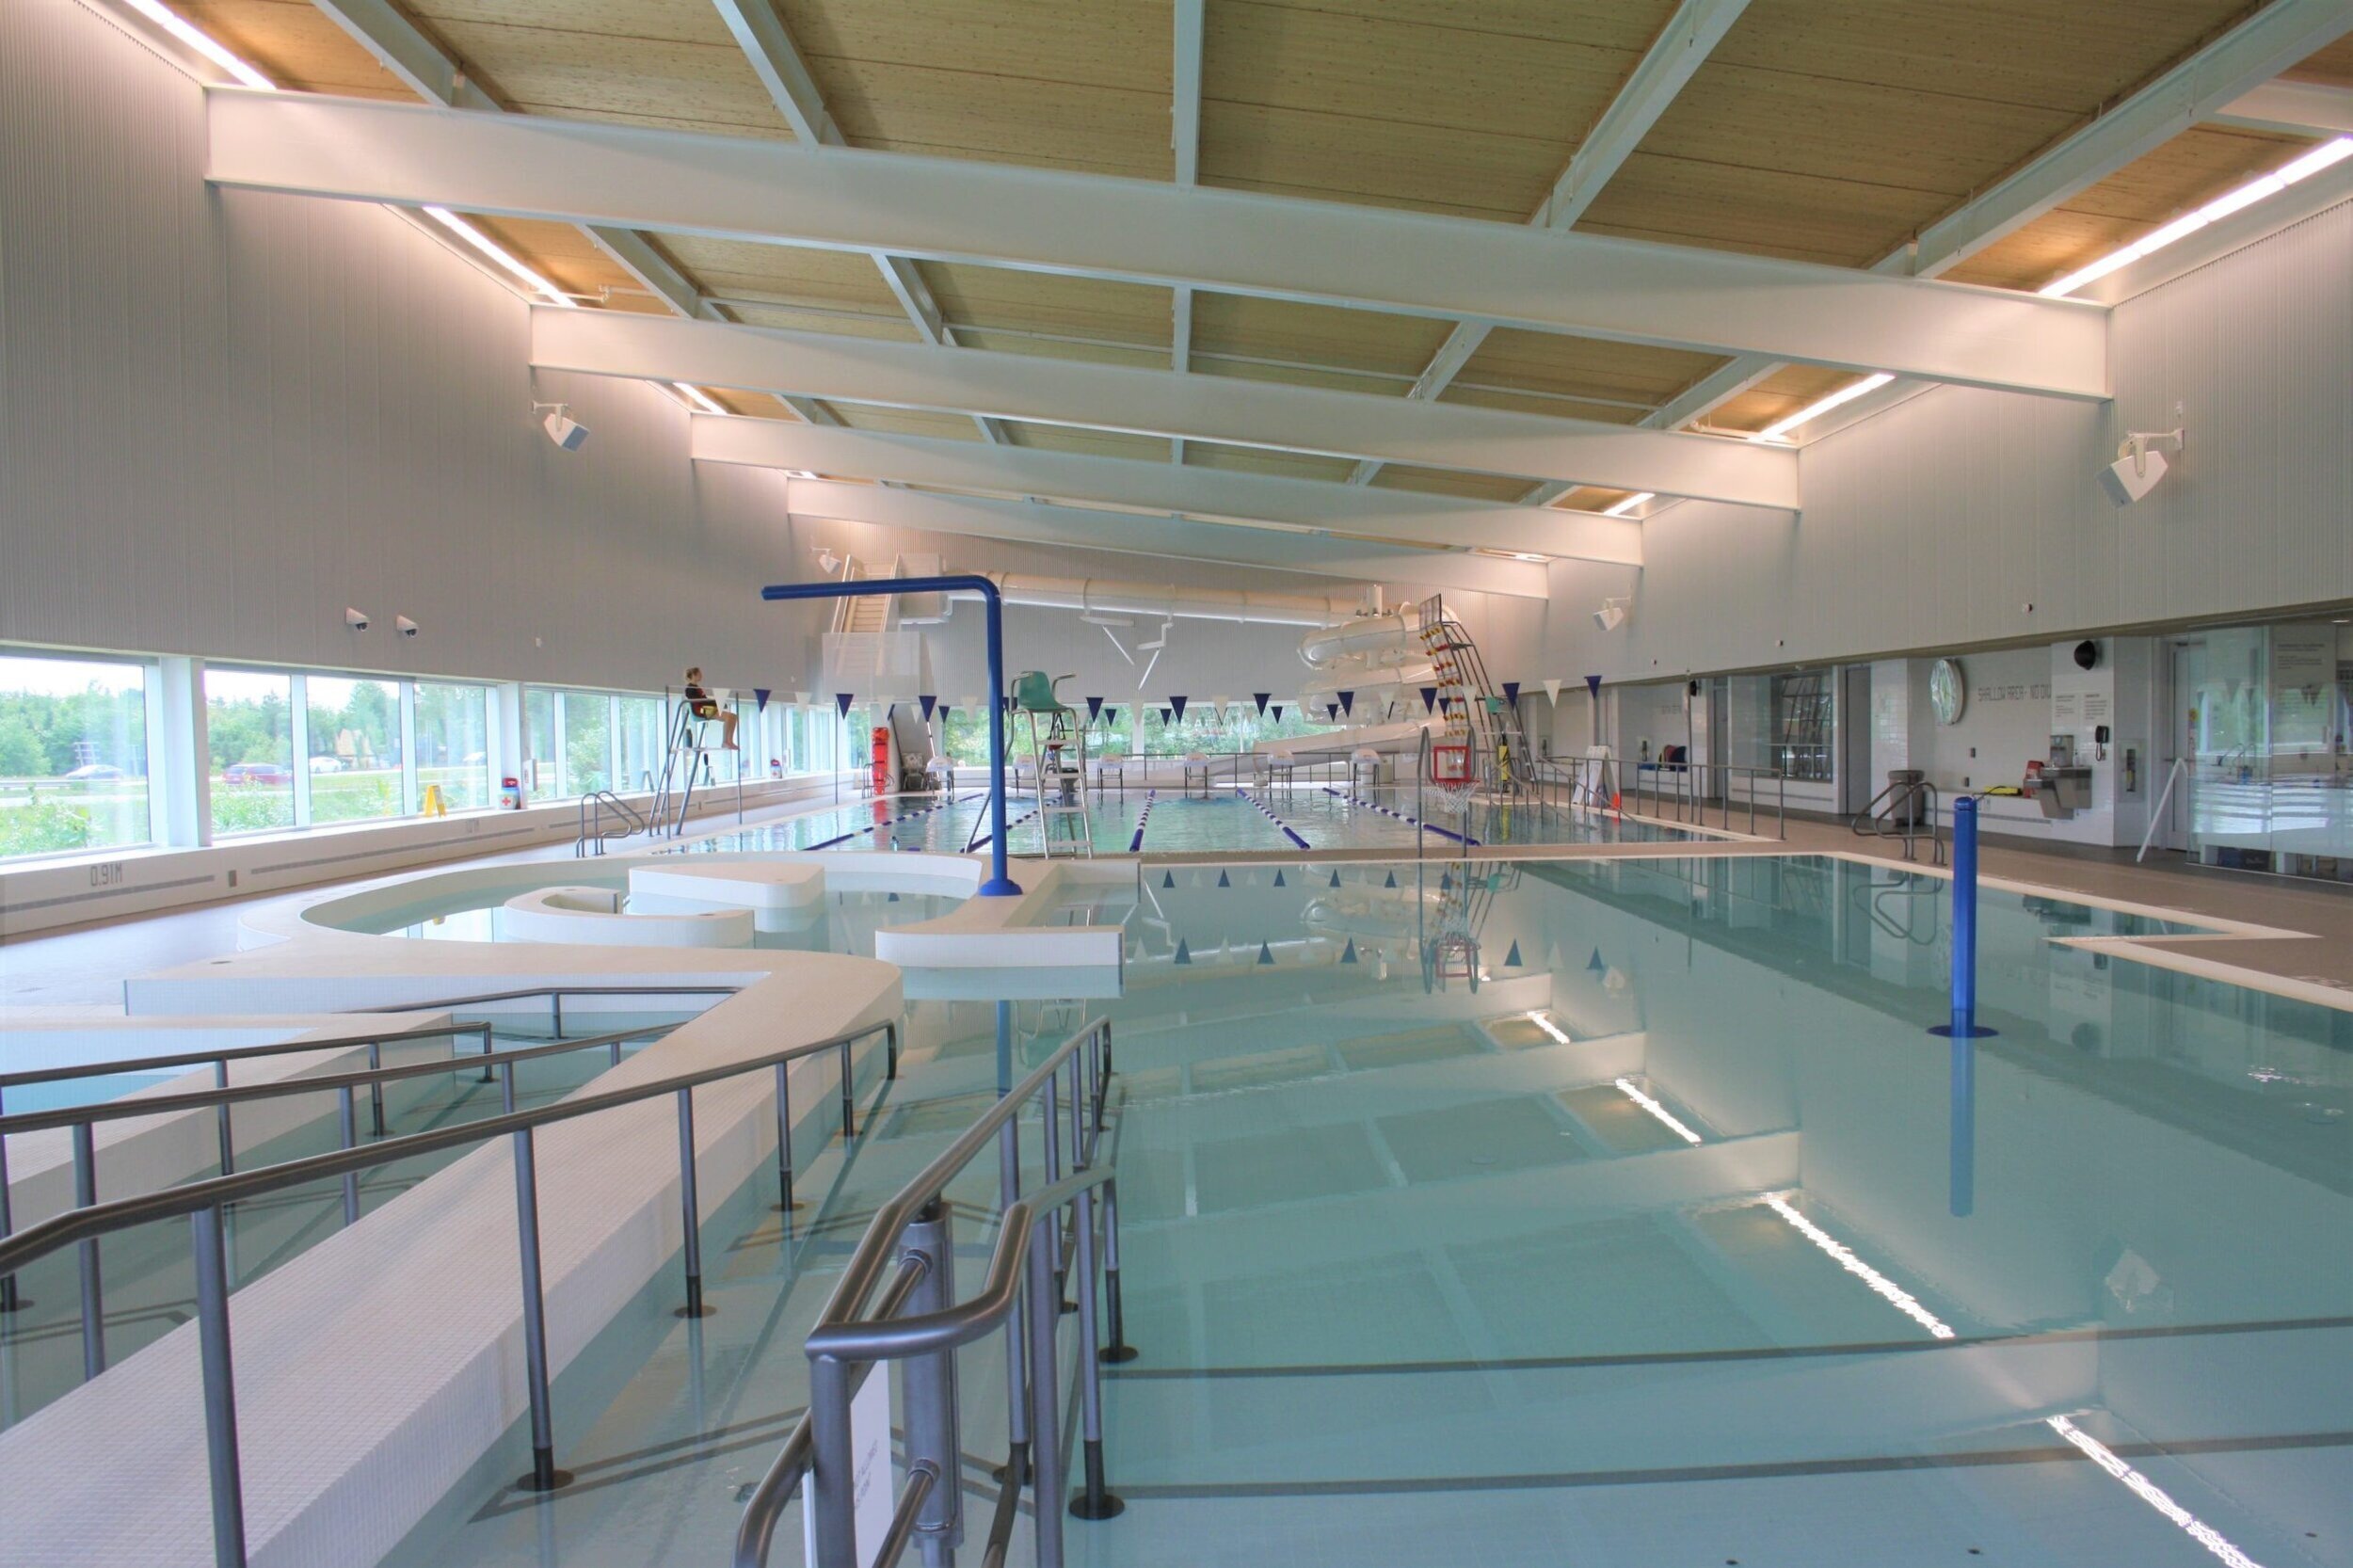 East Hants Aquatic Centre